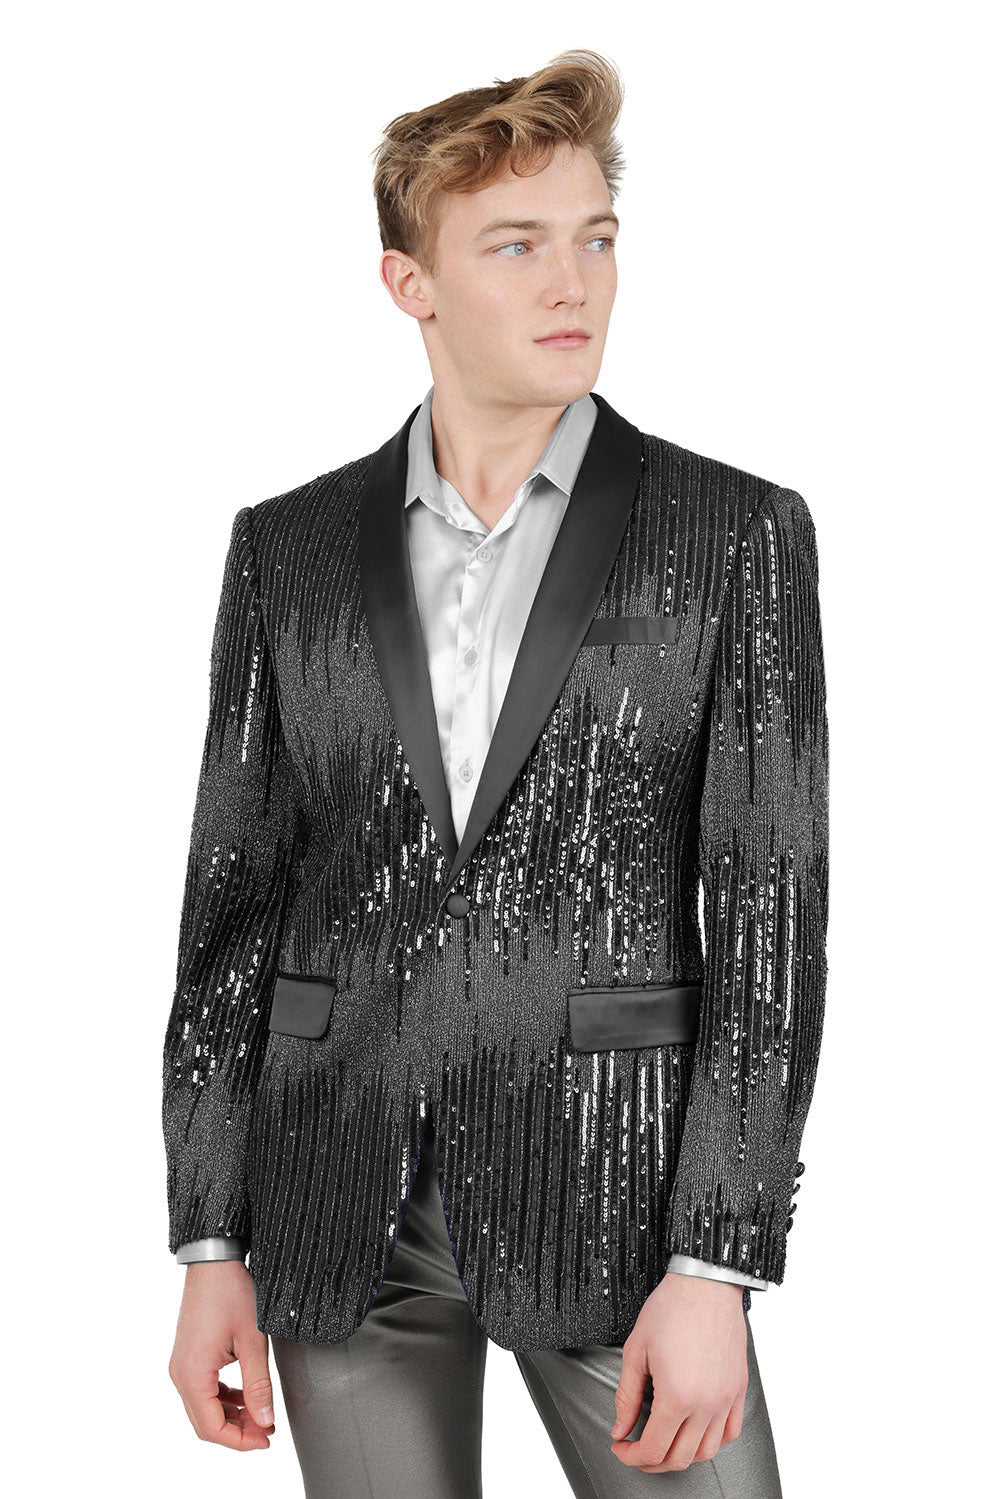 BARABAS Men's Rhinestone Sequin Design Luxury Blazer BL3085 Black Silver